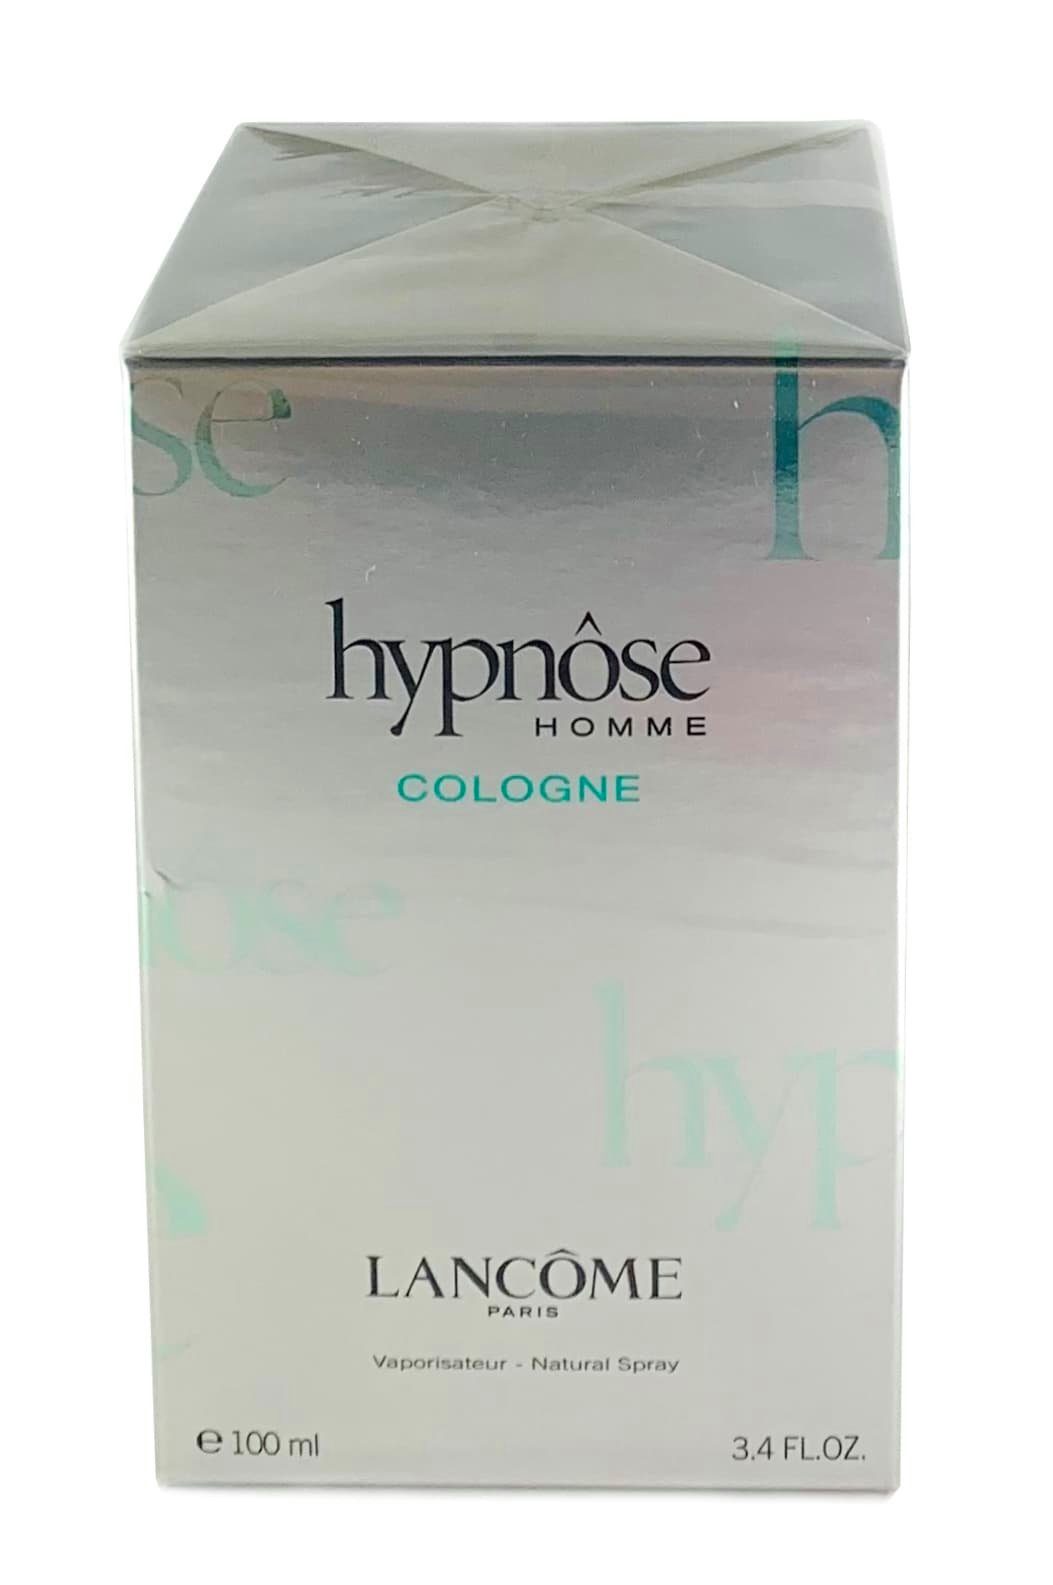 LANCOME Eau de Cologne Lancôme Spray Homme ml Cologne 100 Hypnose